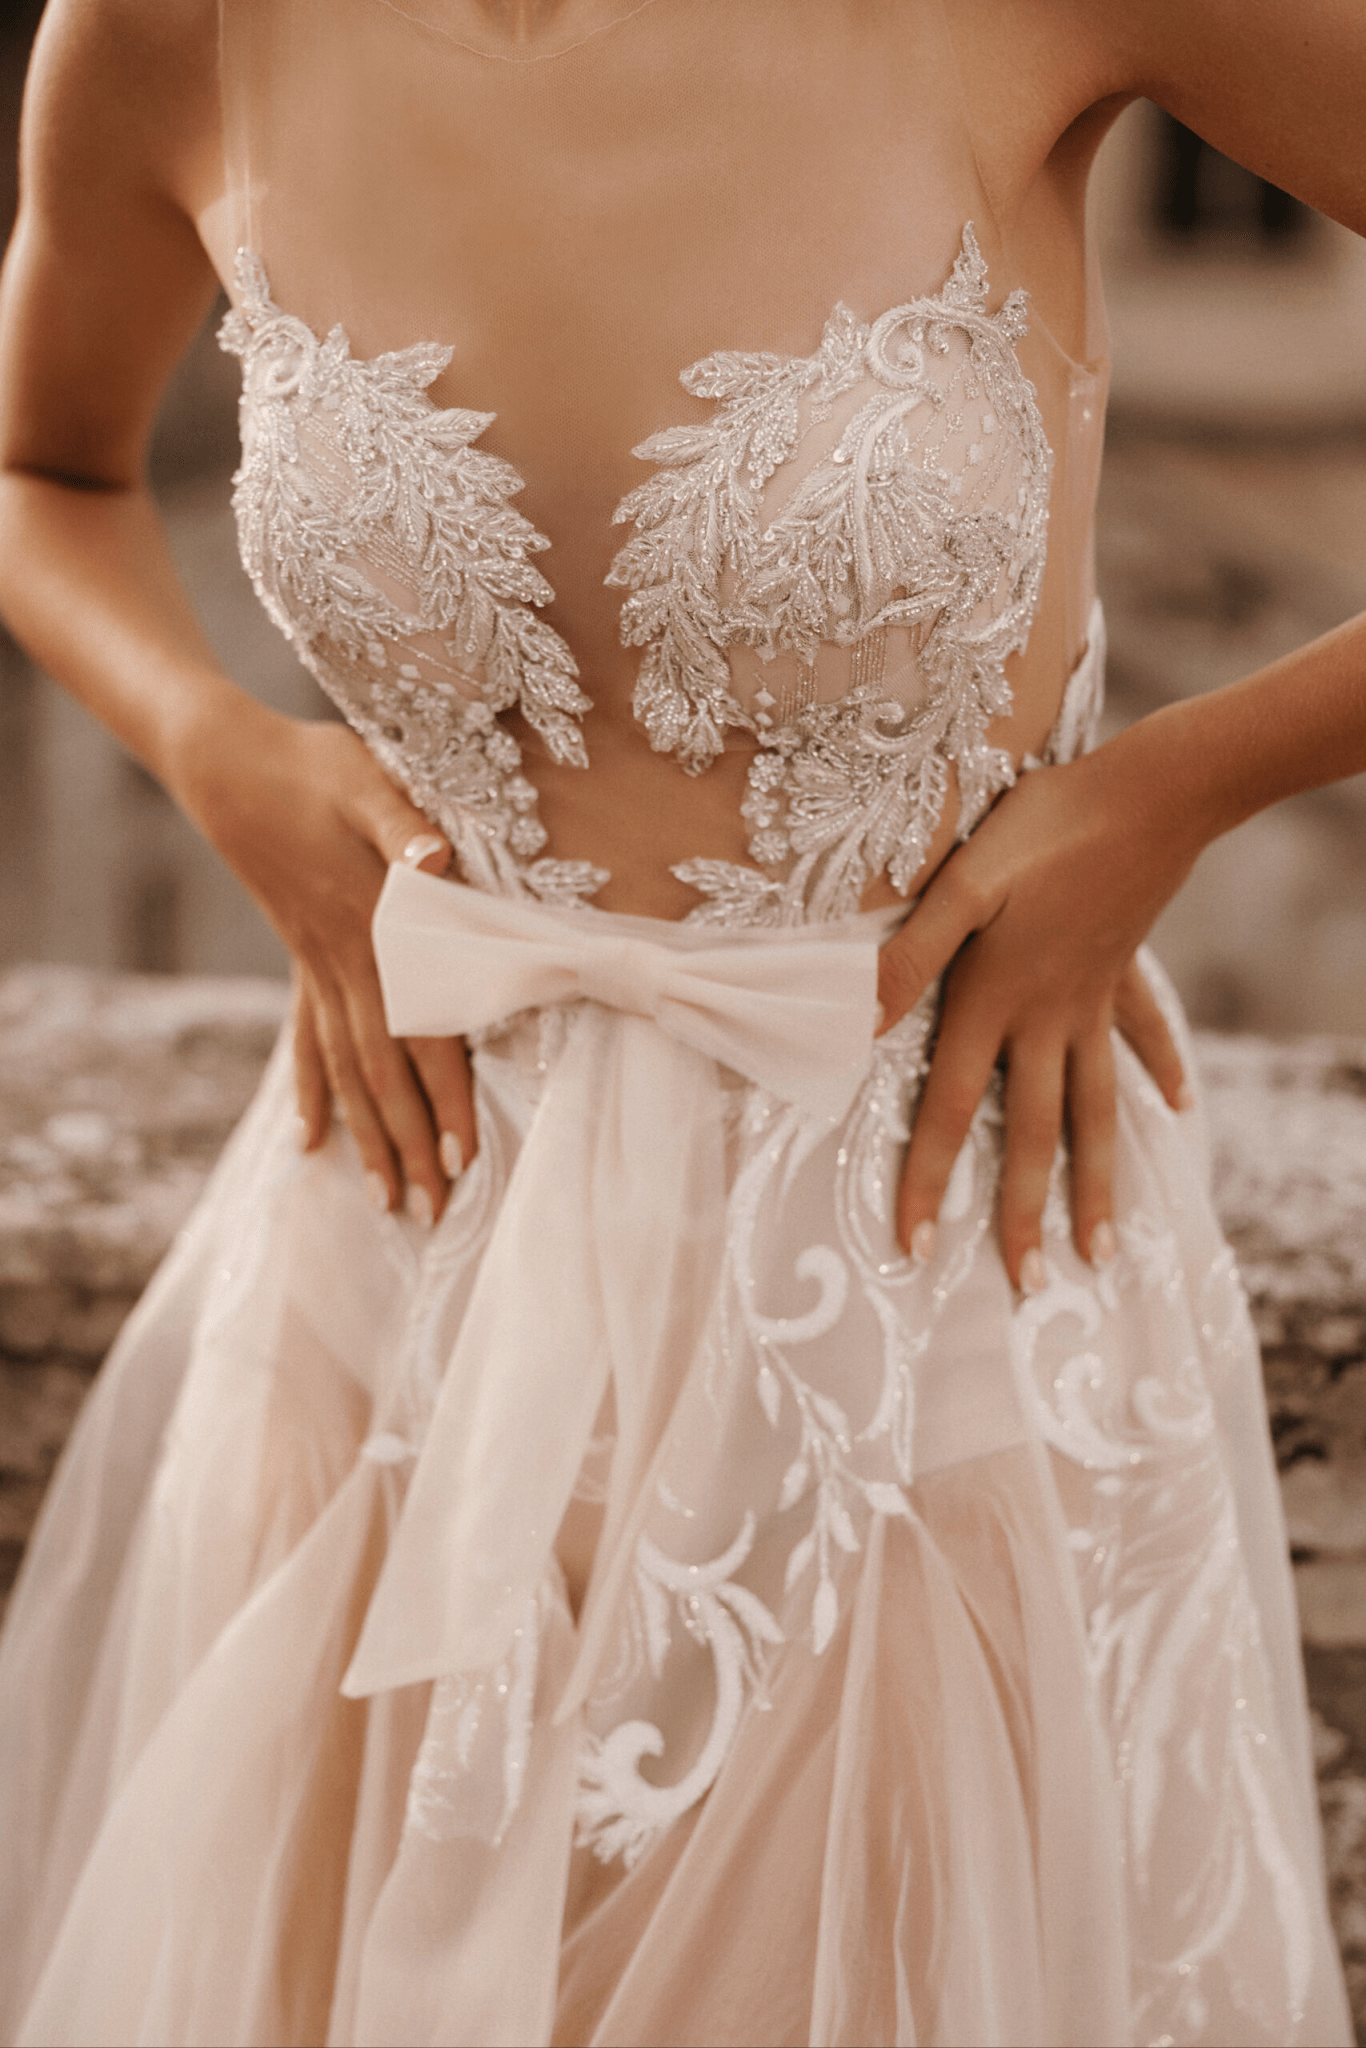 Ivory Sleeveless Wedding Dress with Bow - Wedding Dress with Tulle - Aline Ball Gown Wedding Dress Plus Size - ISABELLE - WonderlandByLilian